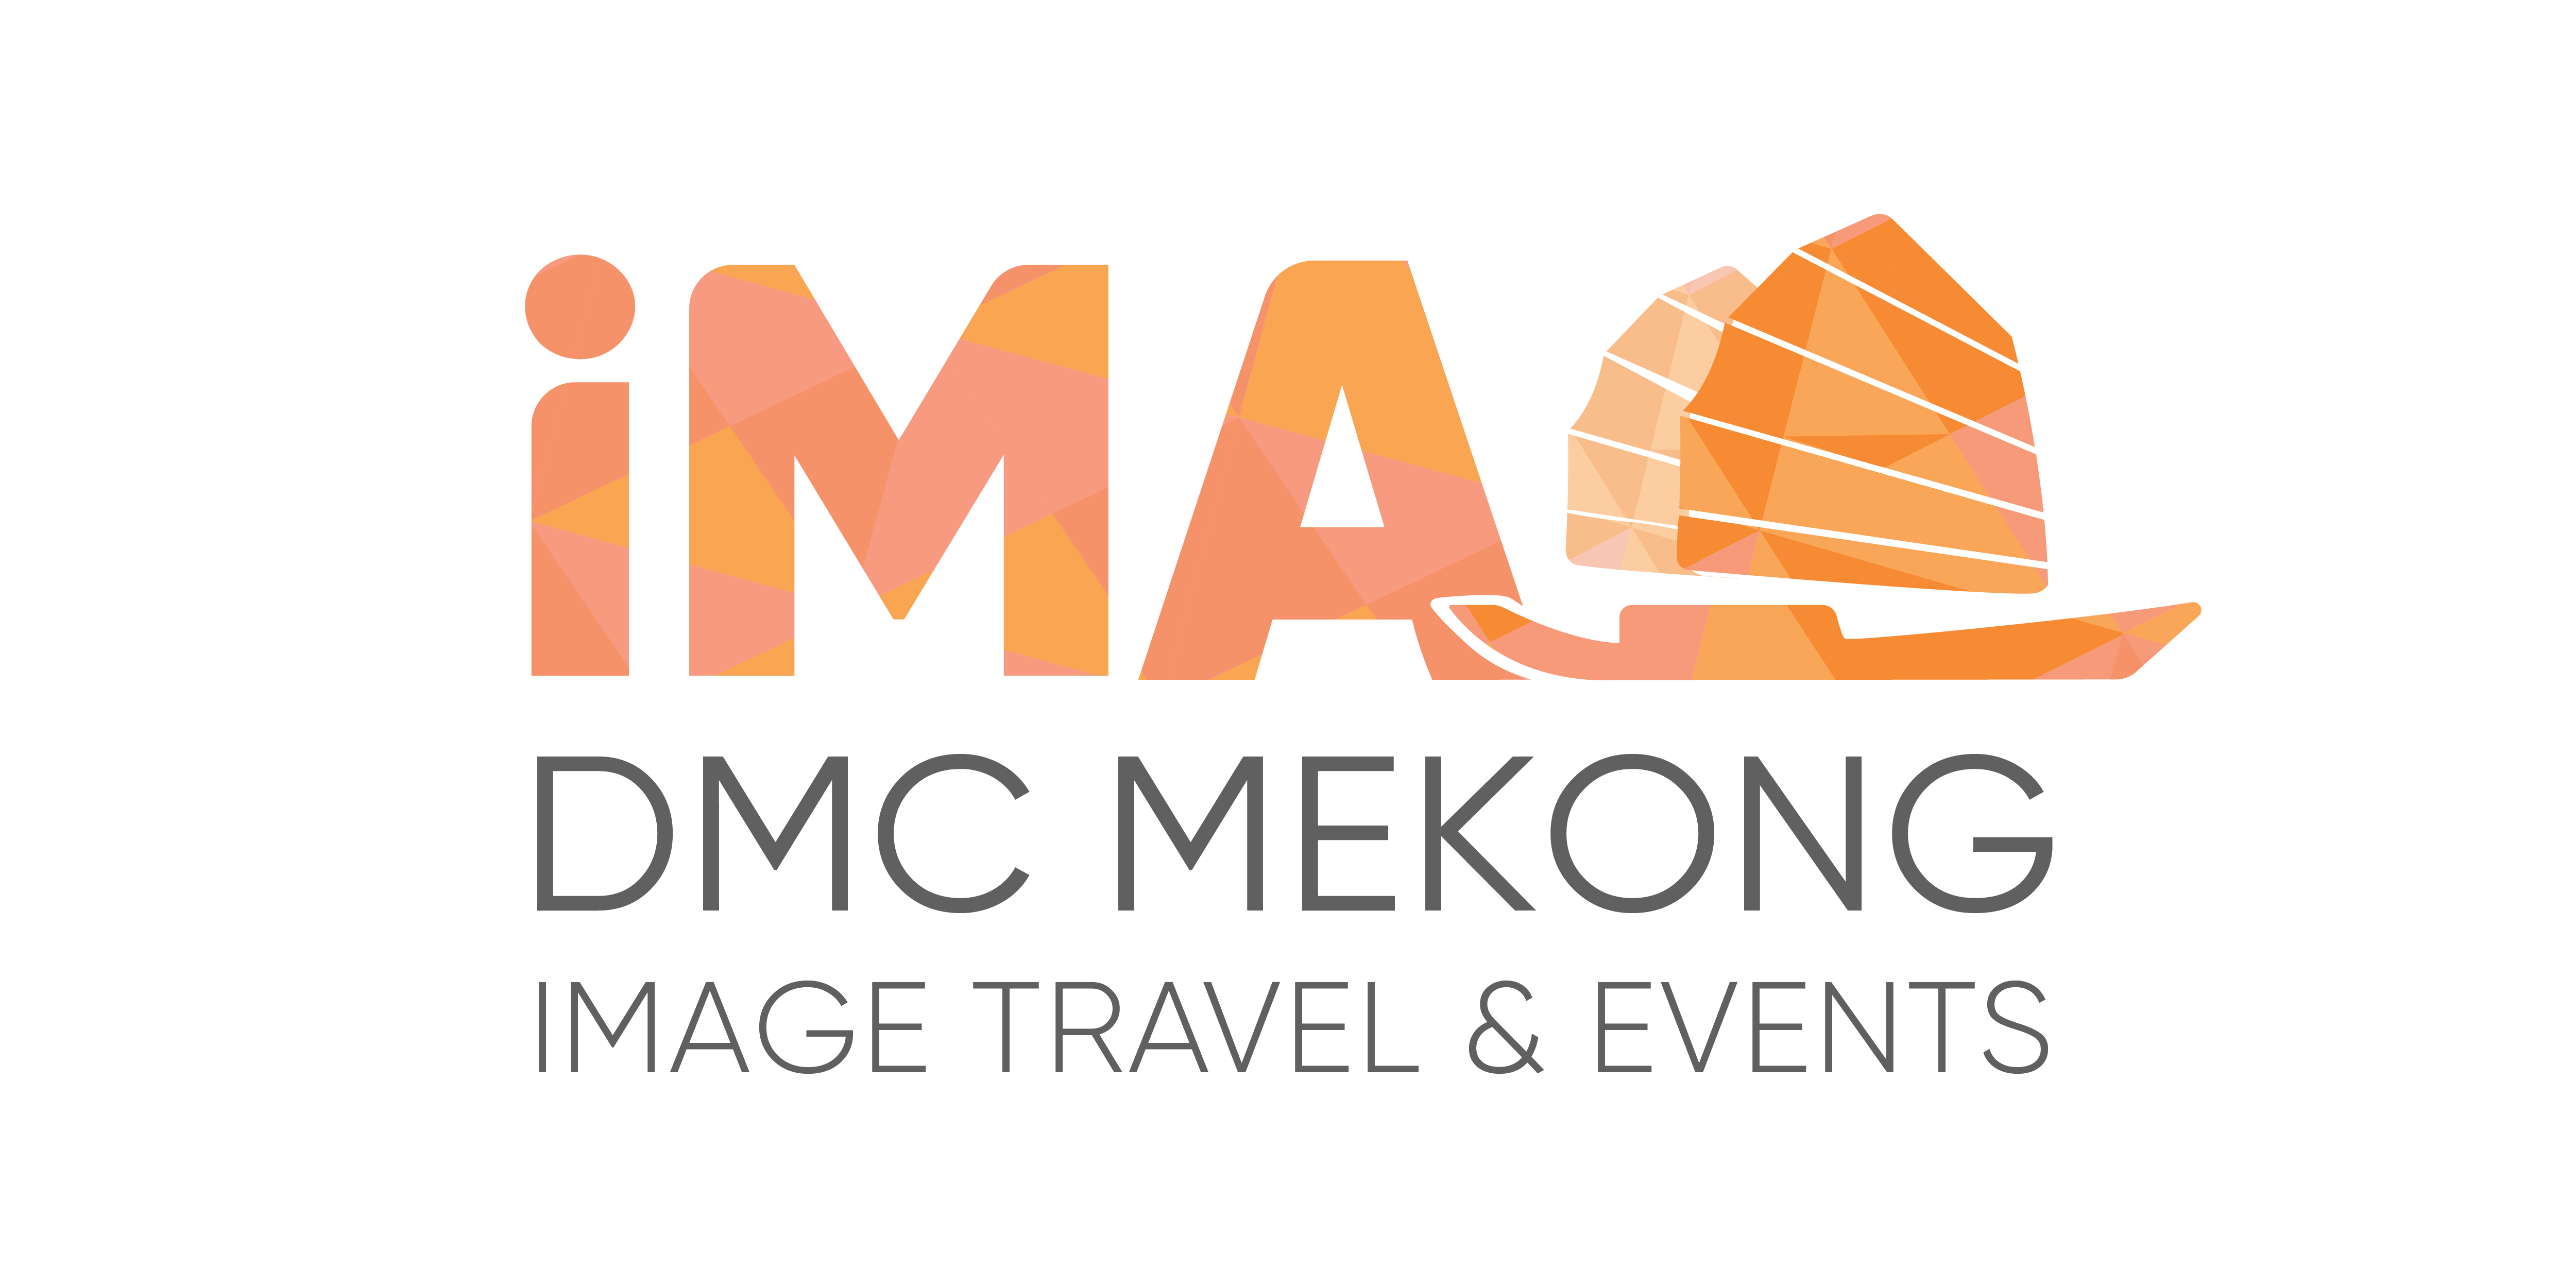 dmc mekong image